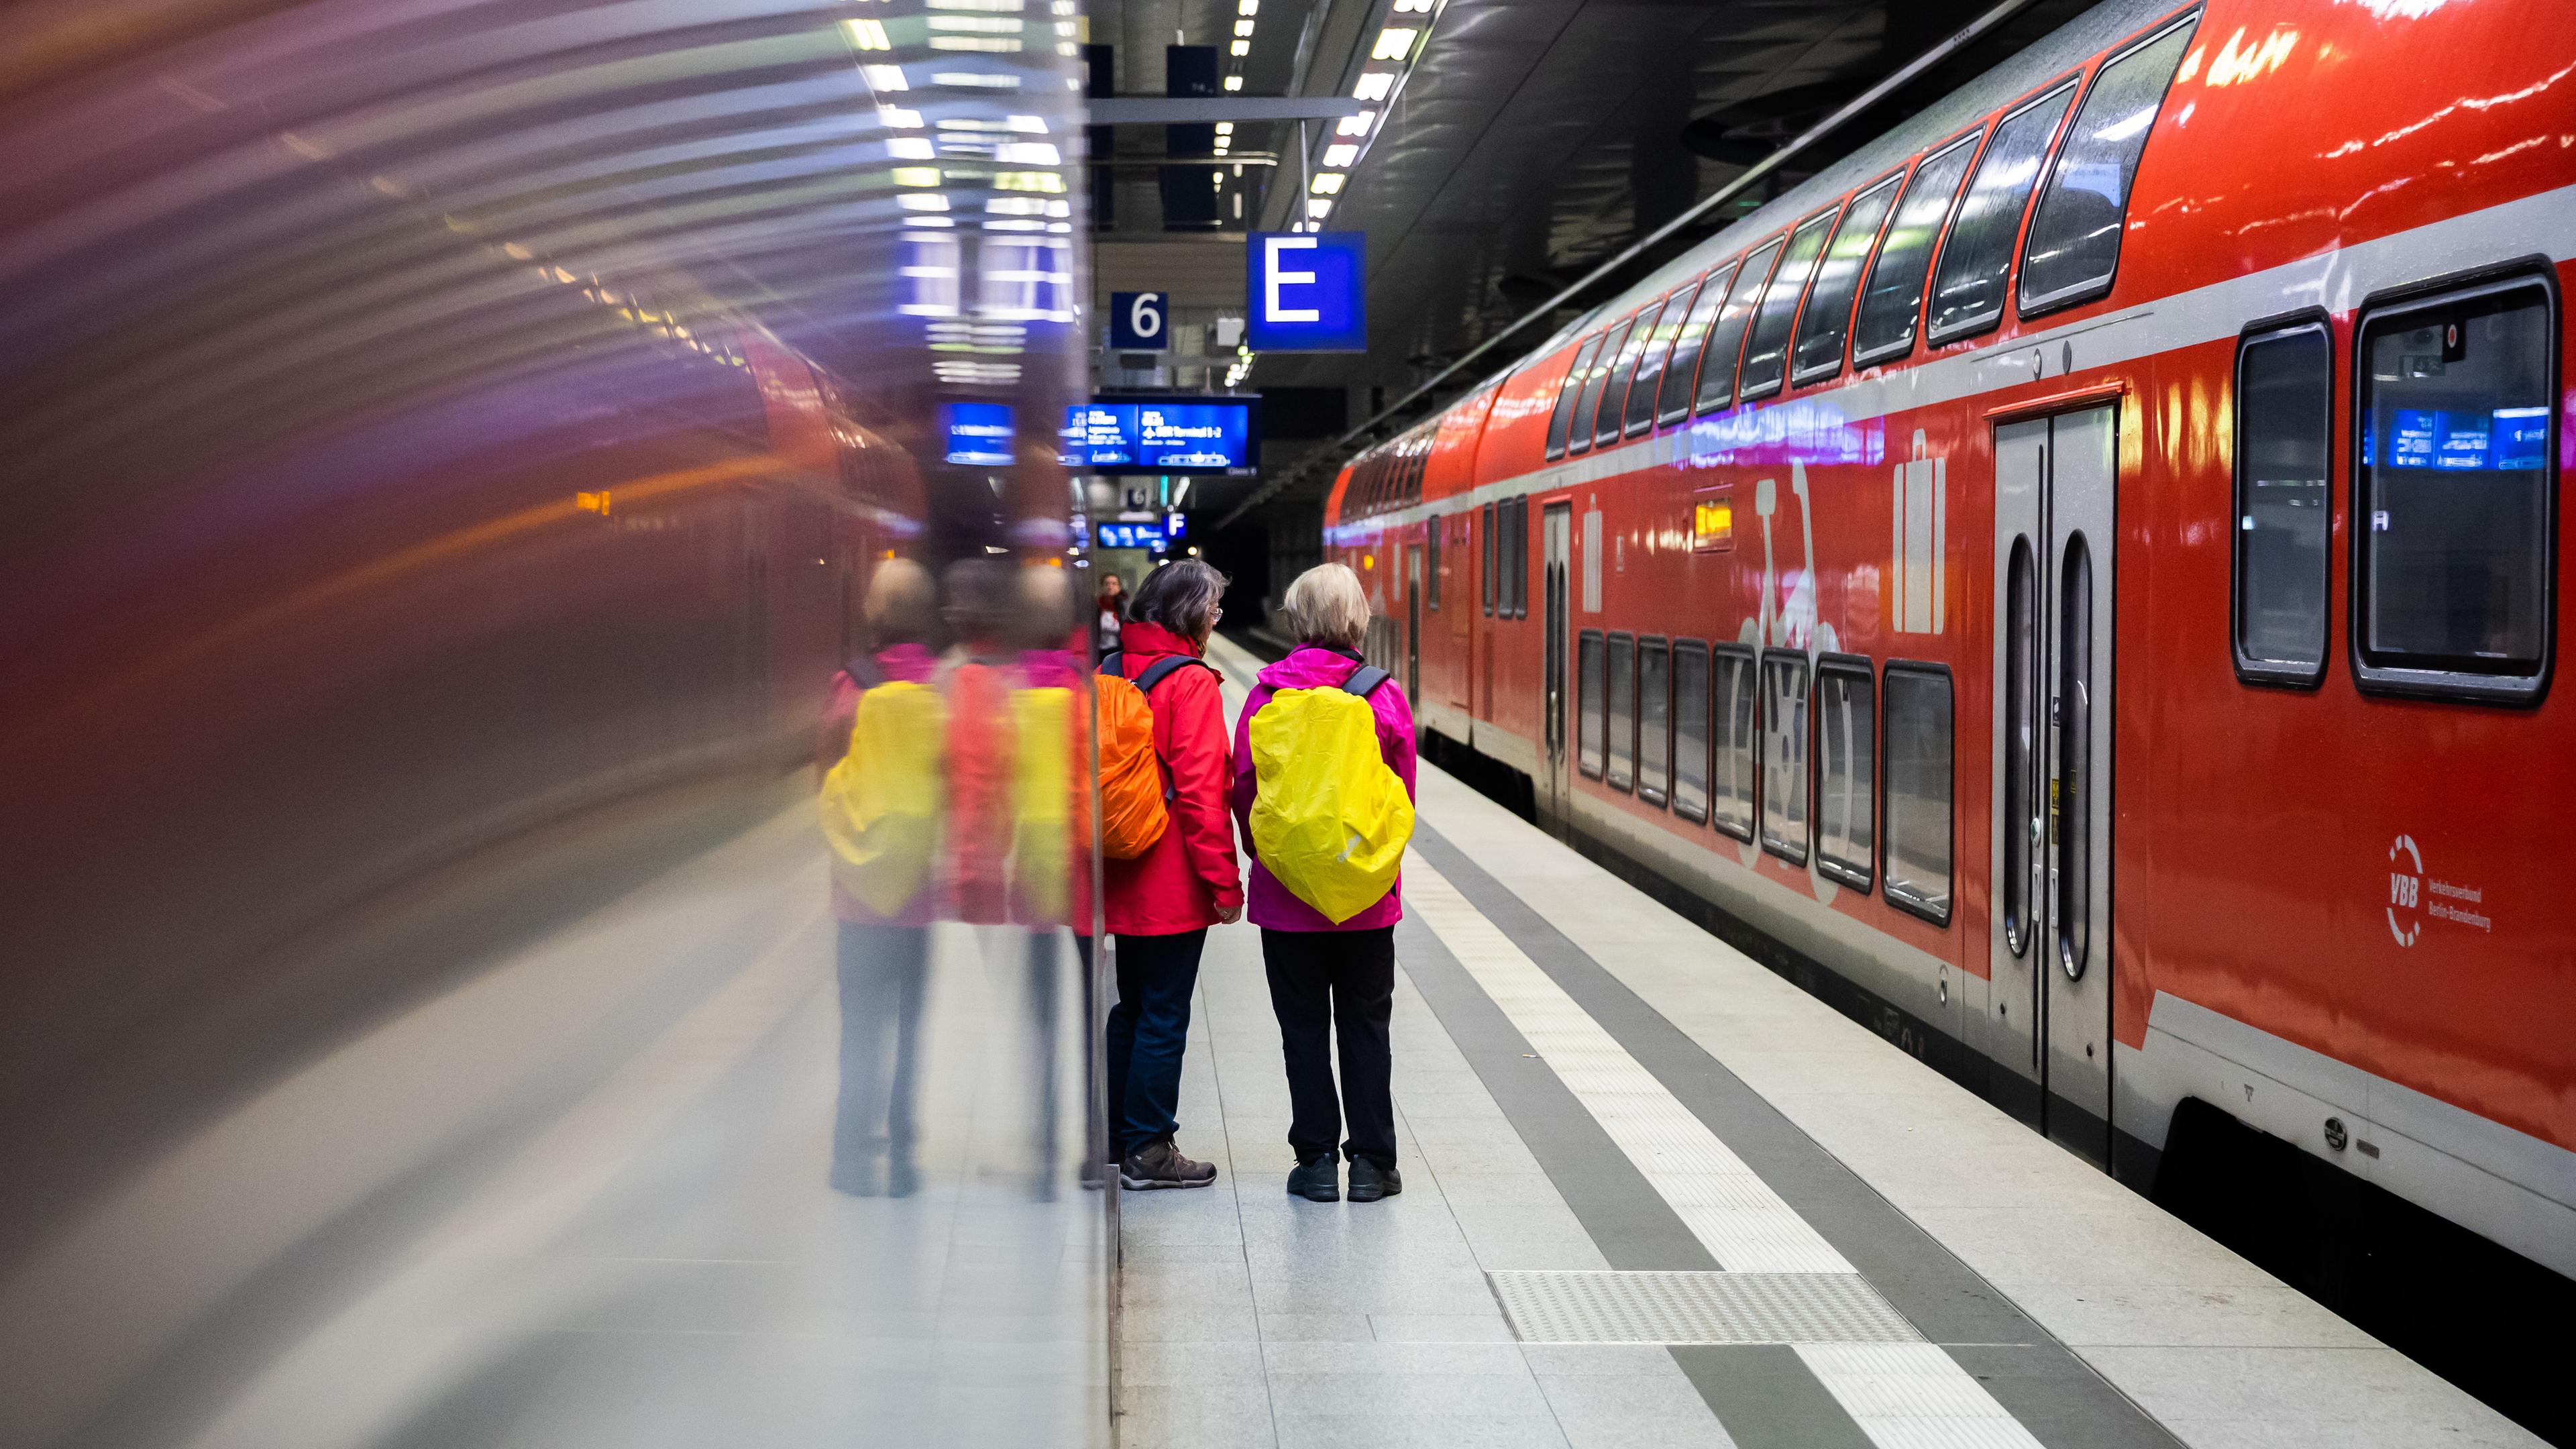 Fahrgäste stehen am Berliner Hauptbahnhof neben einem Regionalexpress am Bahnsteig.